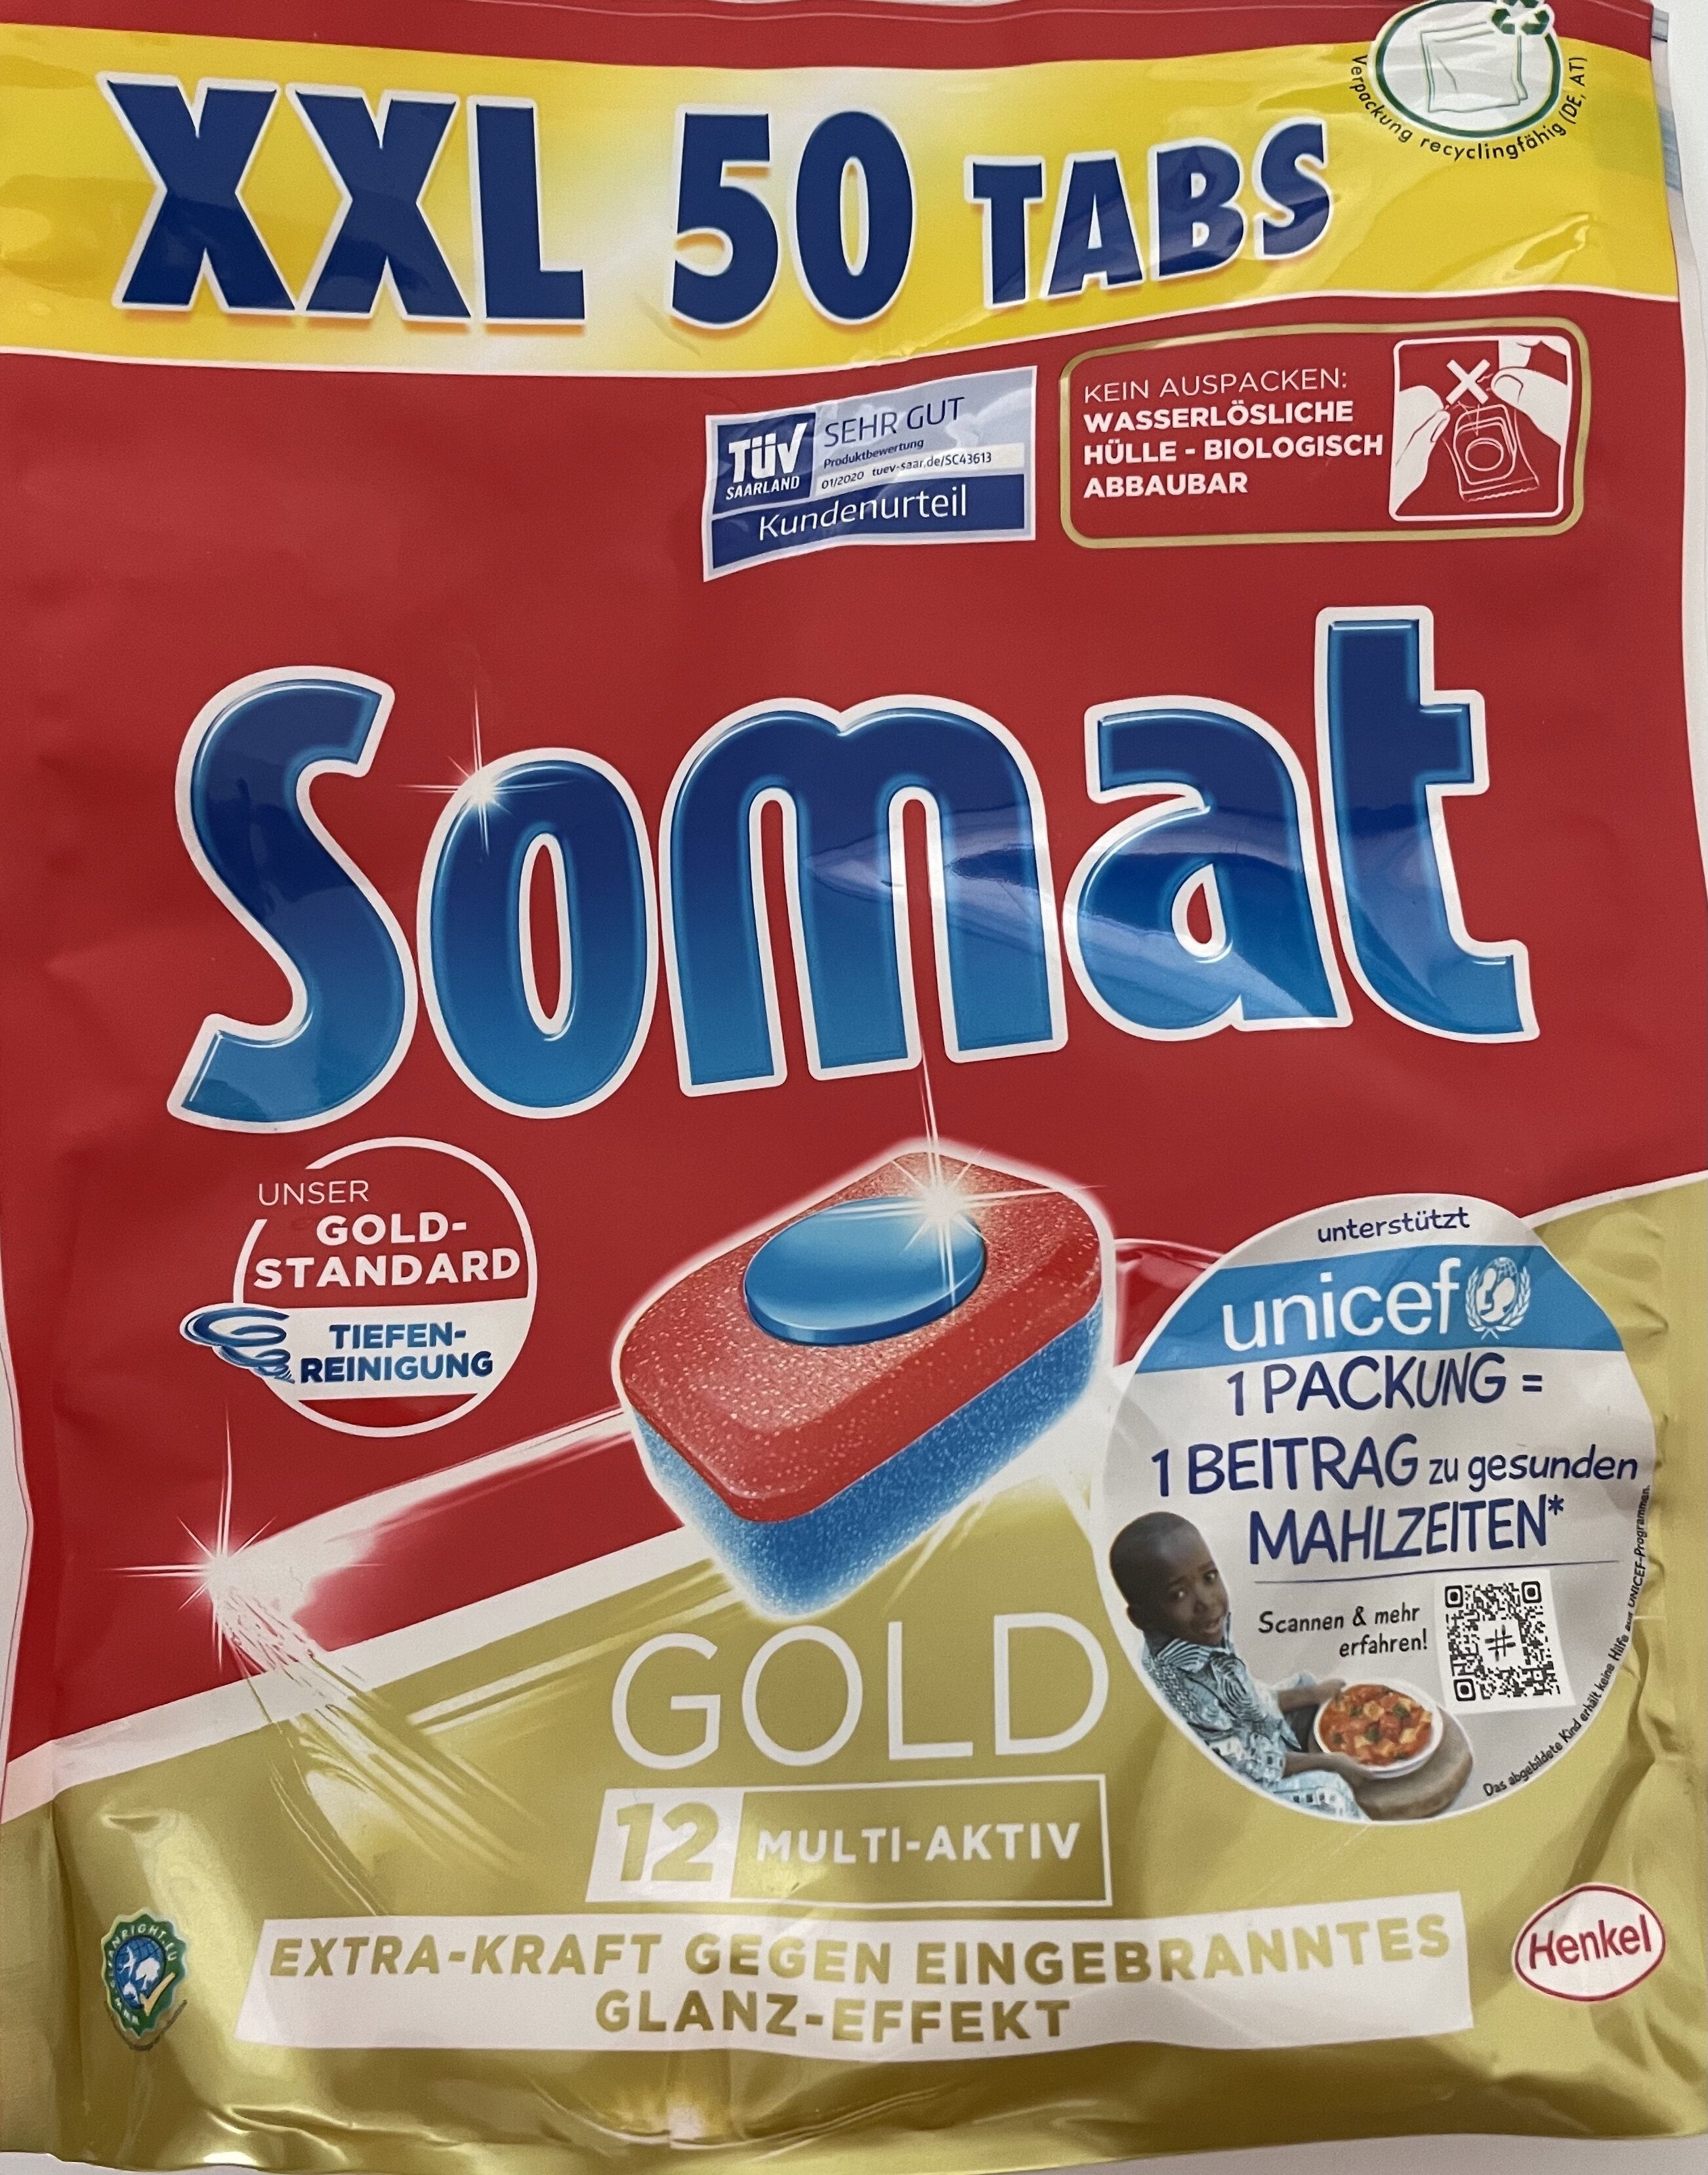 Somat Gold 12 Multi-Aktiv - Product - de